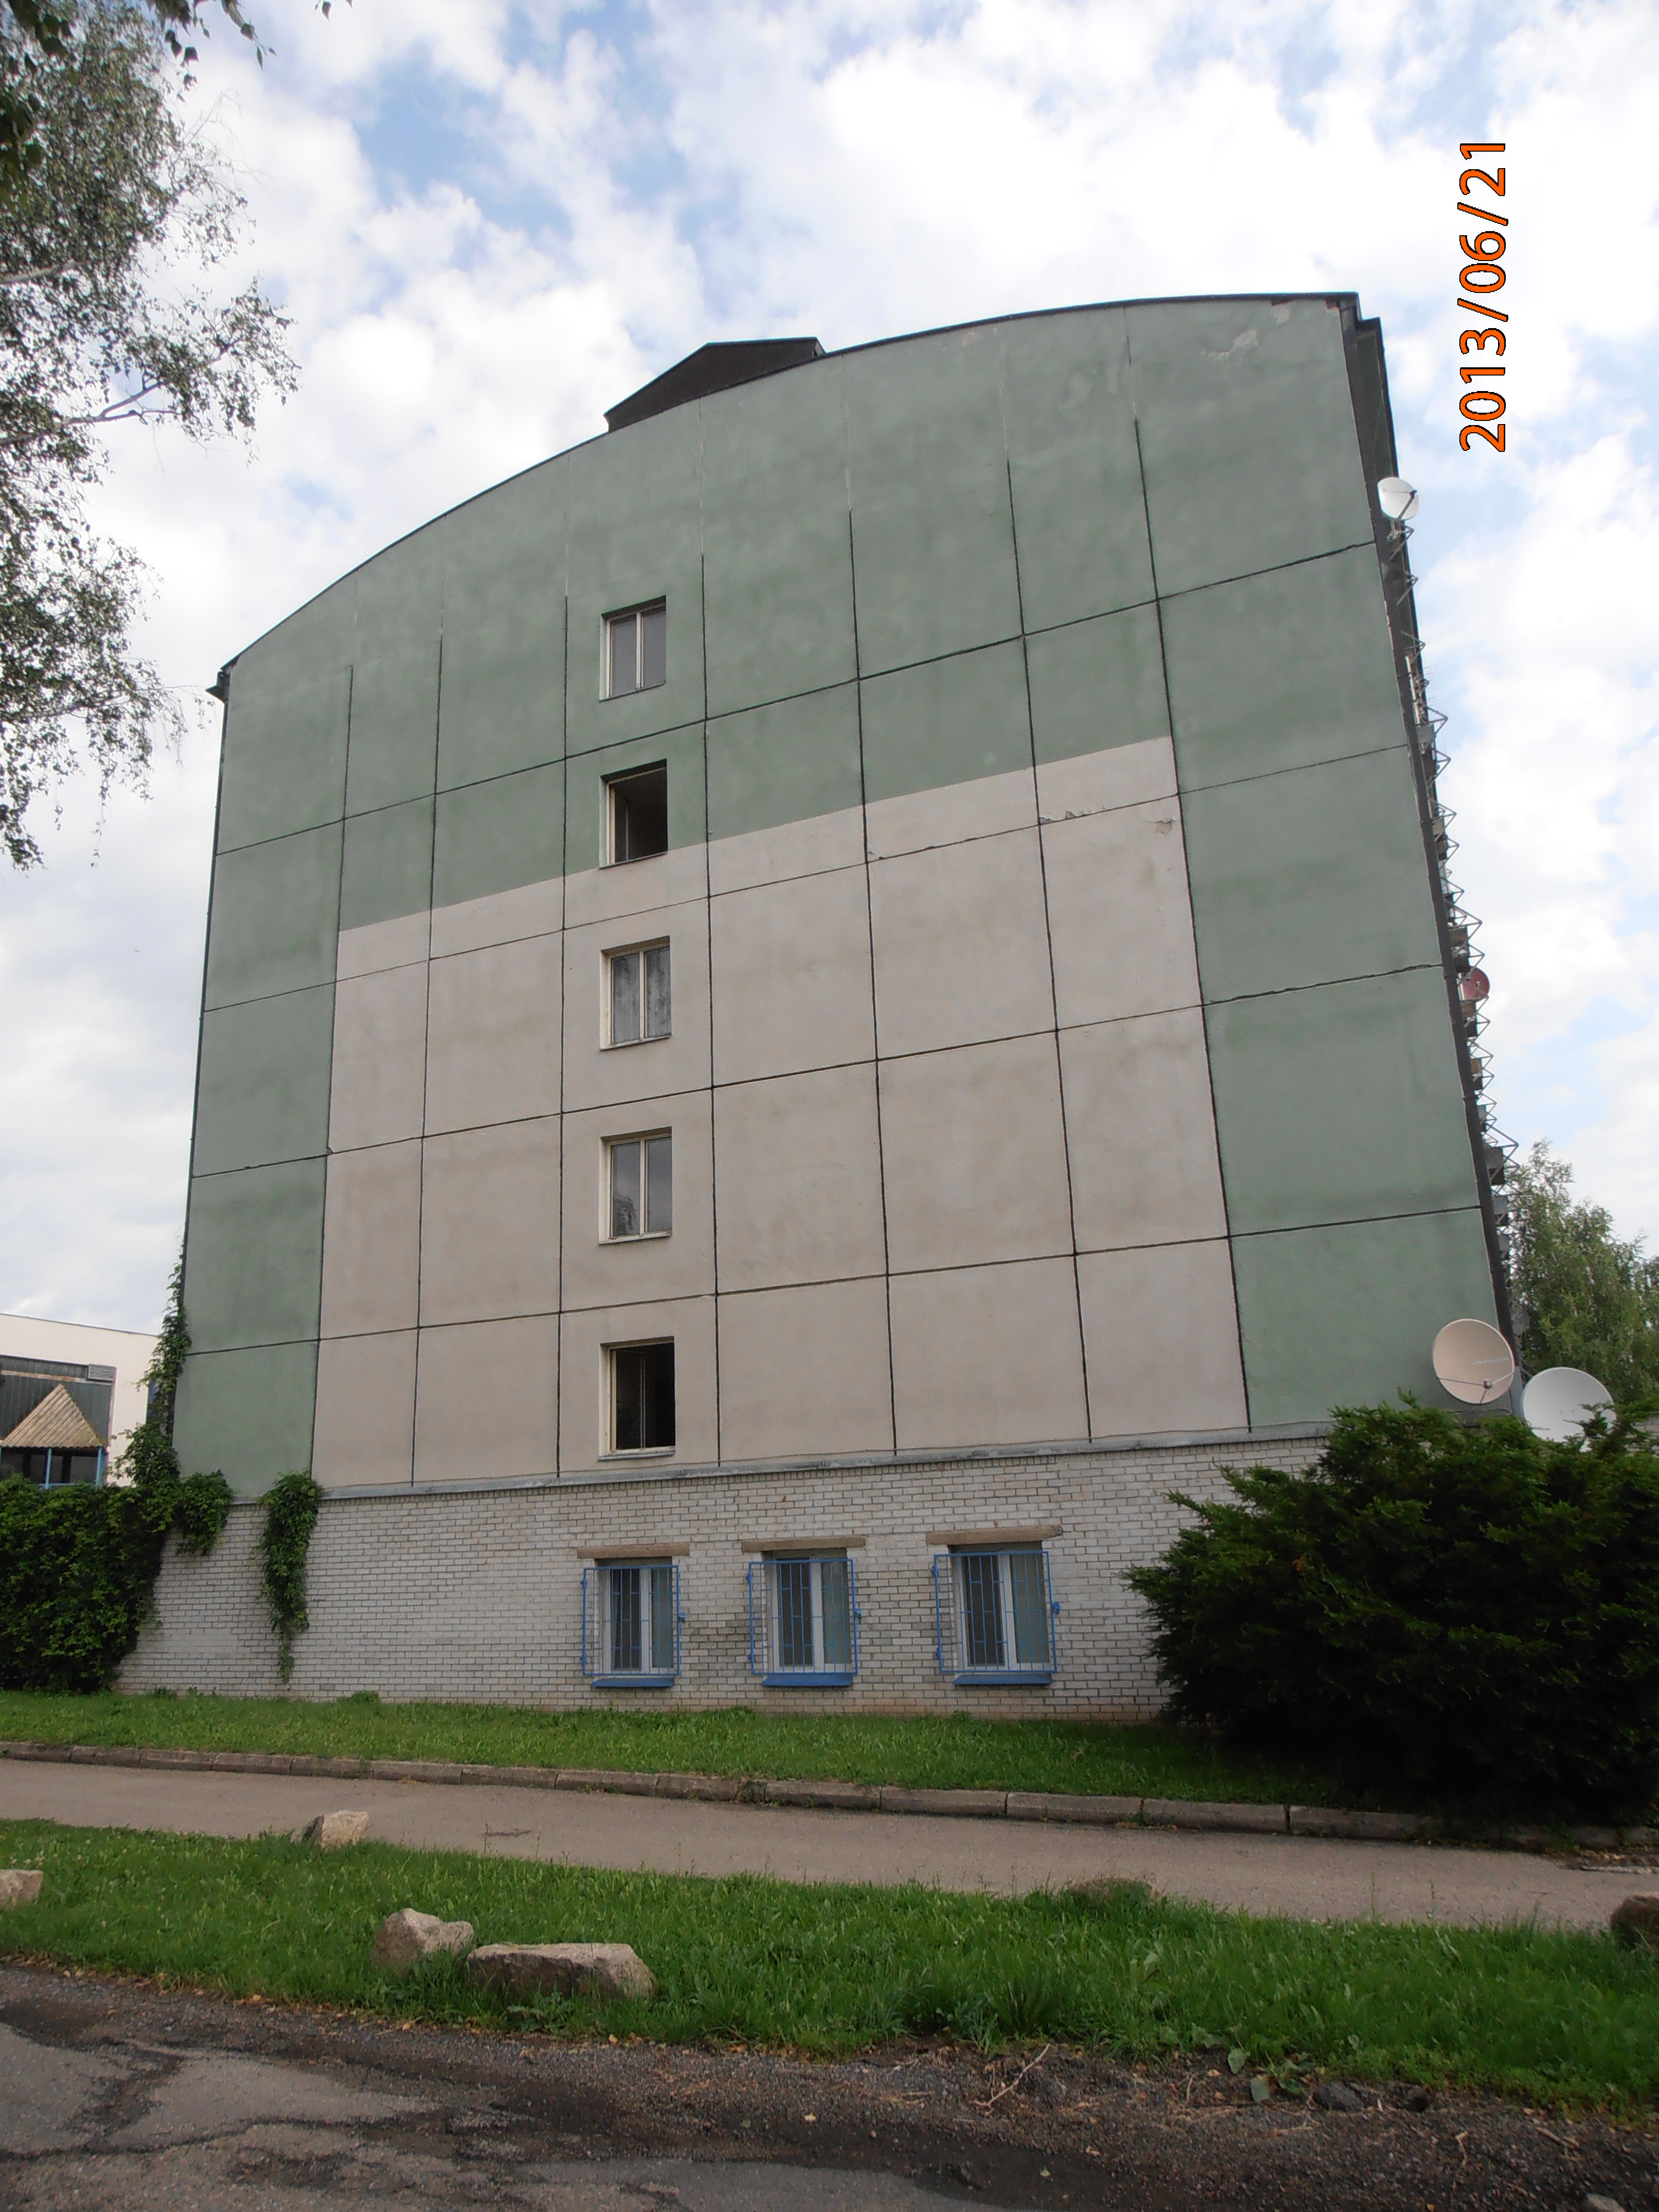 Benešov - Střední odborné učiliště čp 1997 Černoleská ulice 3